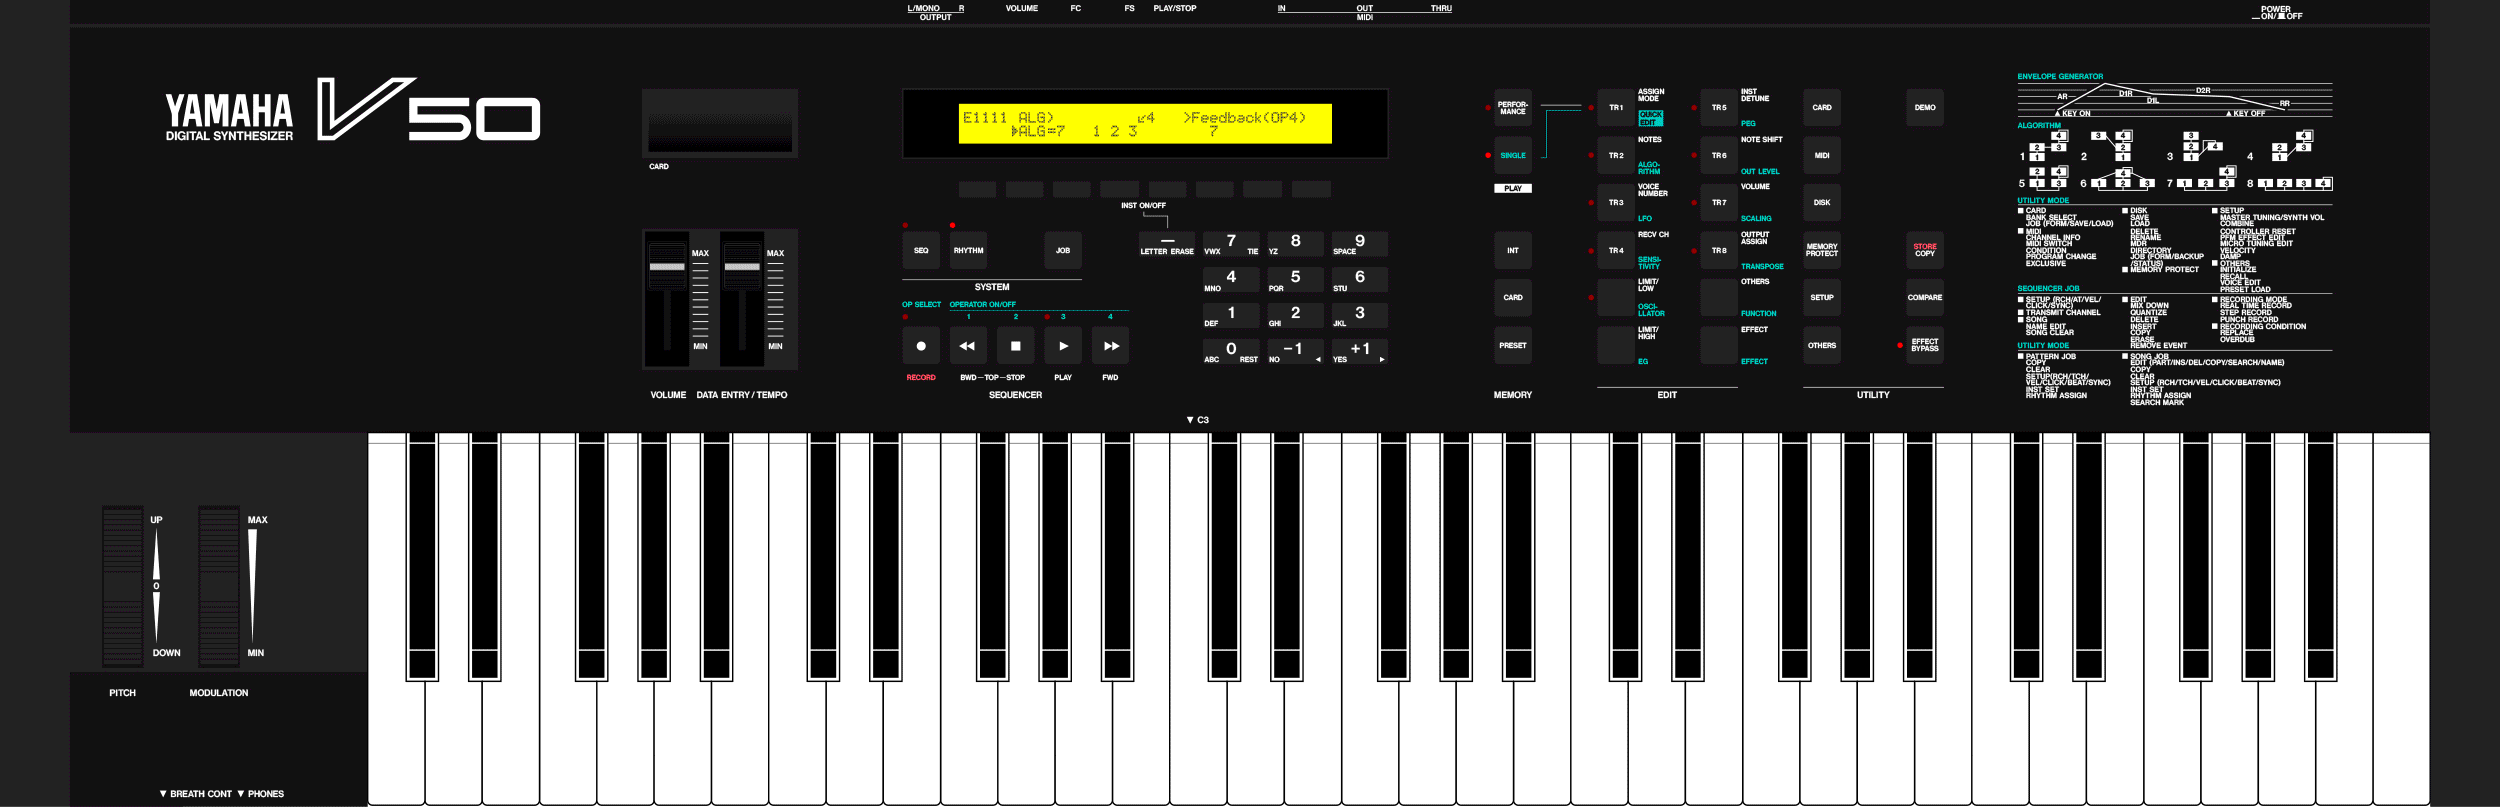 Yamaha V50 digital synthesizer